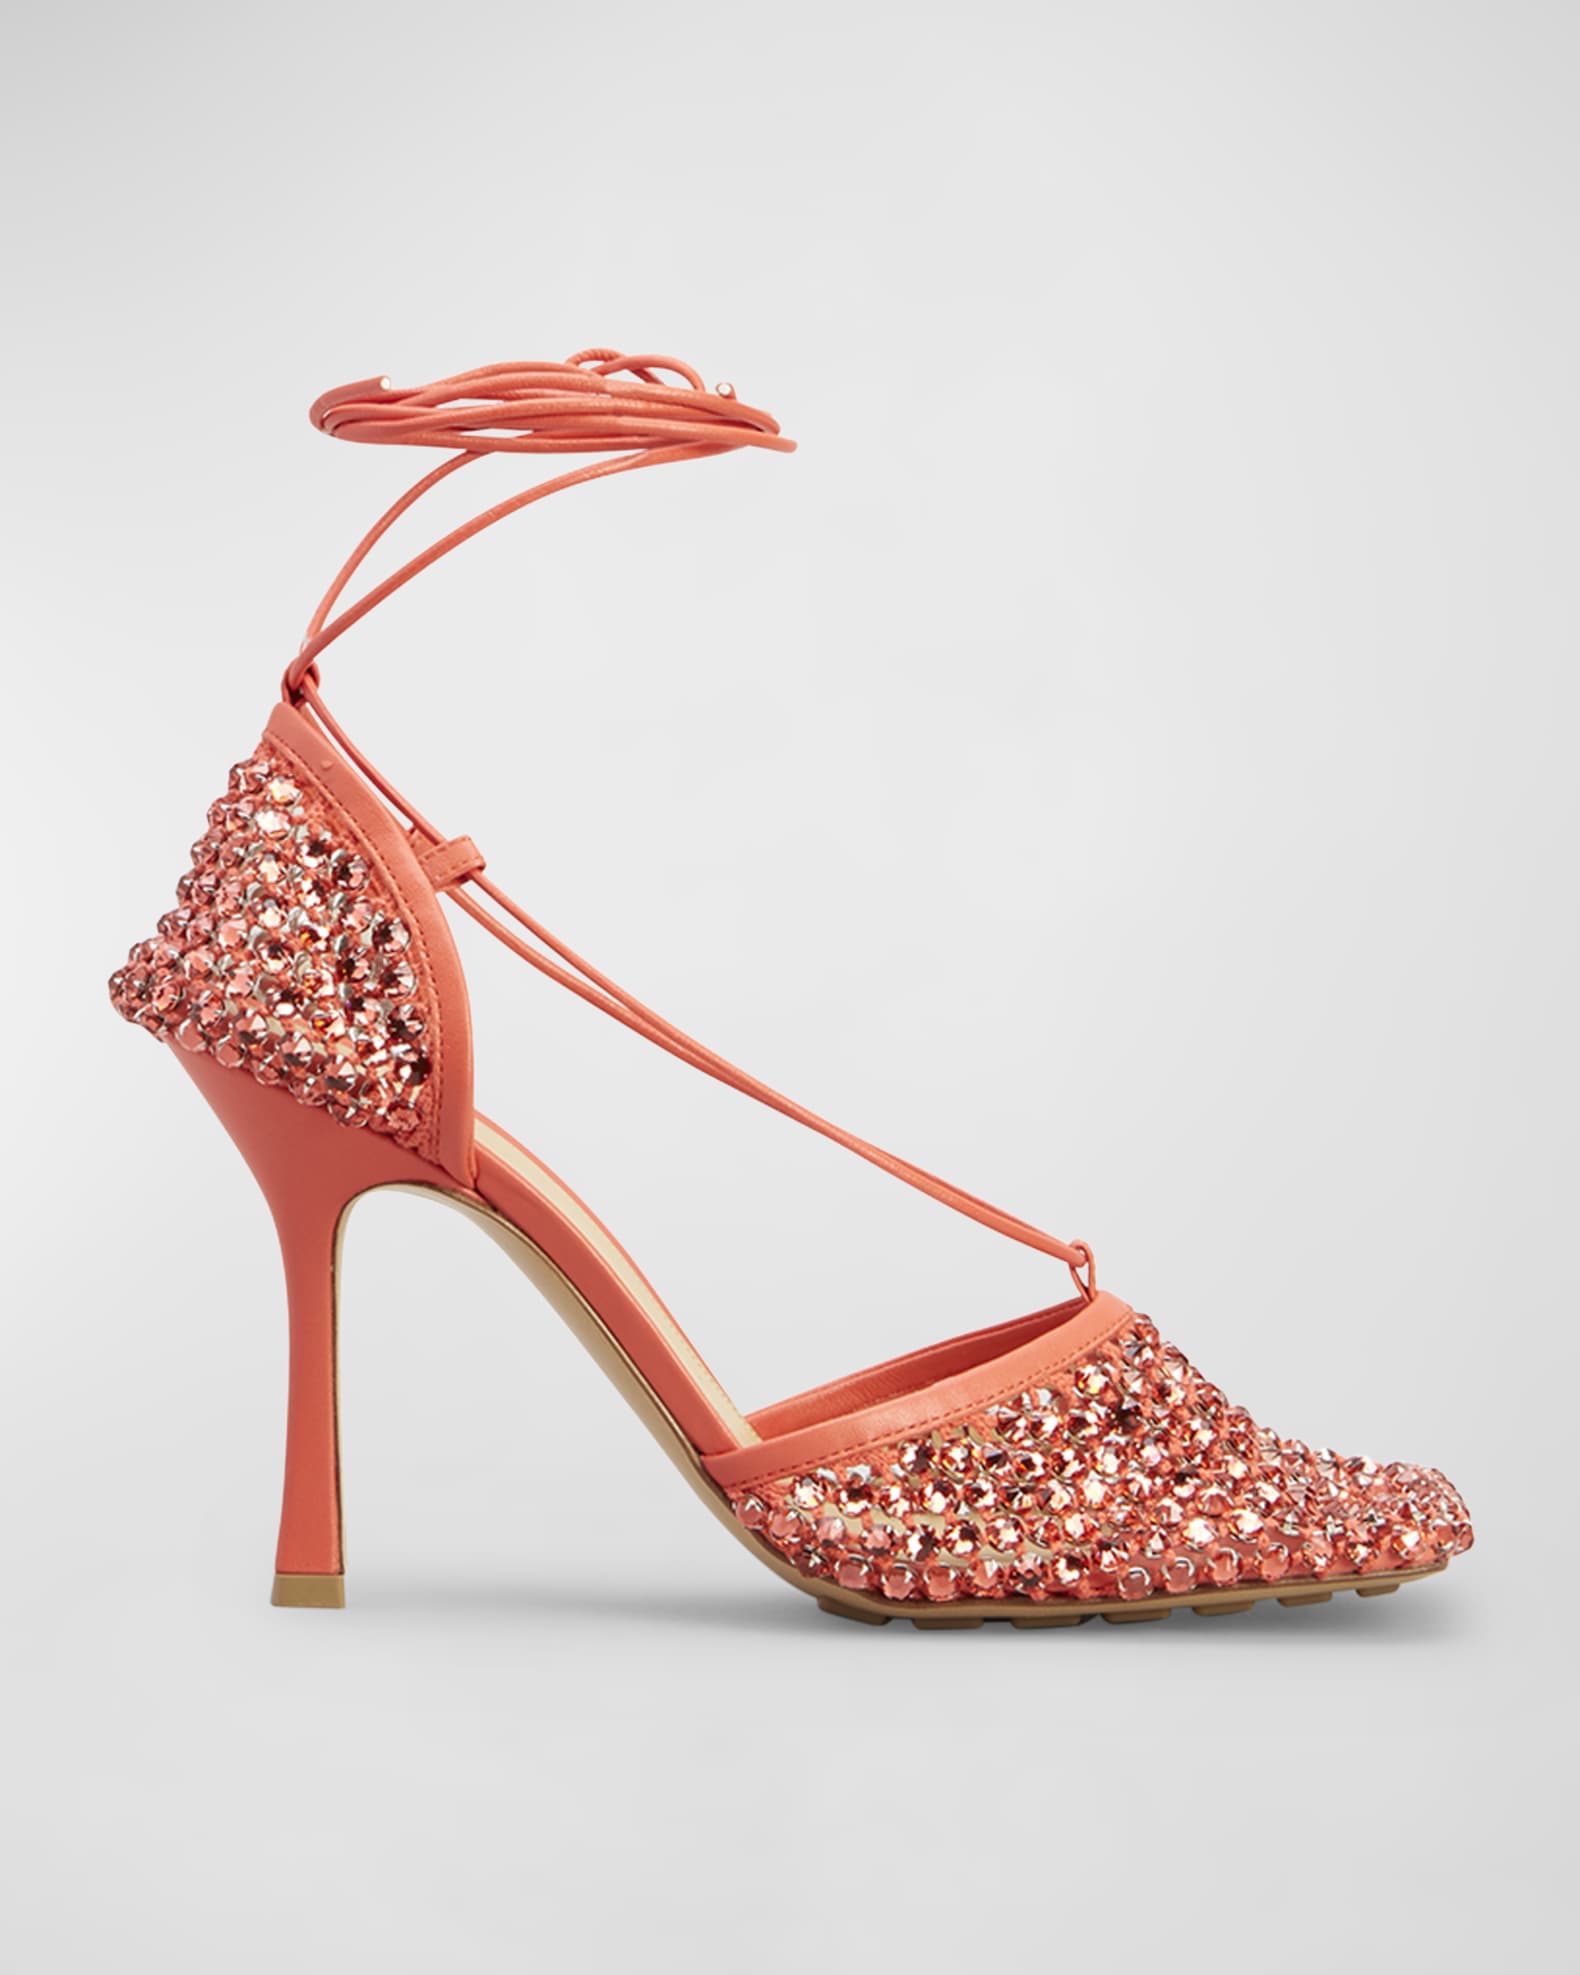 Tangerine Bottega Veneta heels with rhinestones